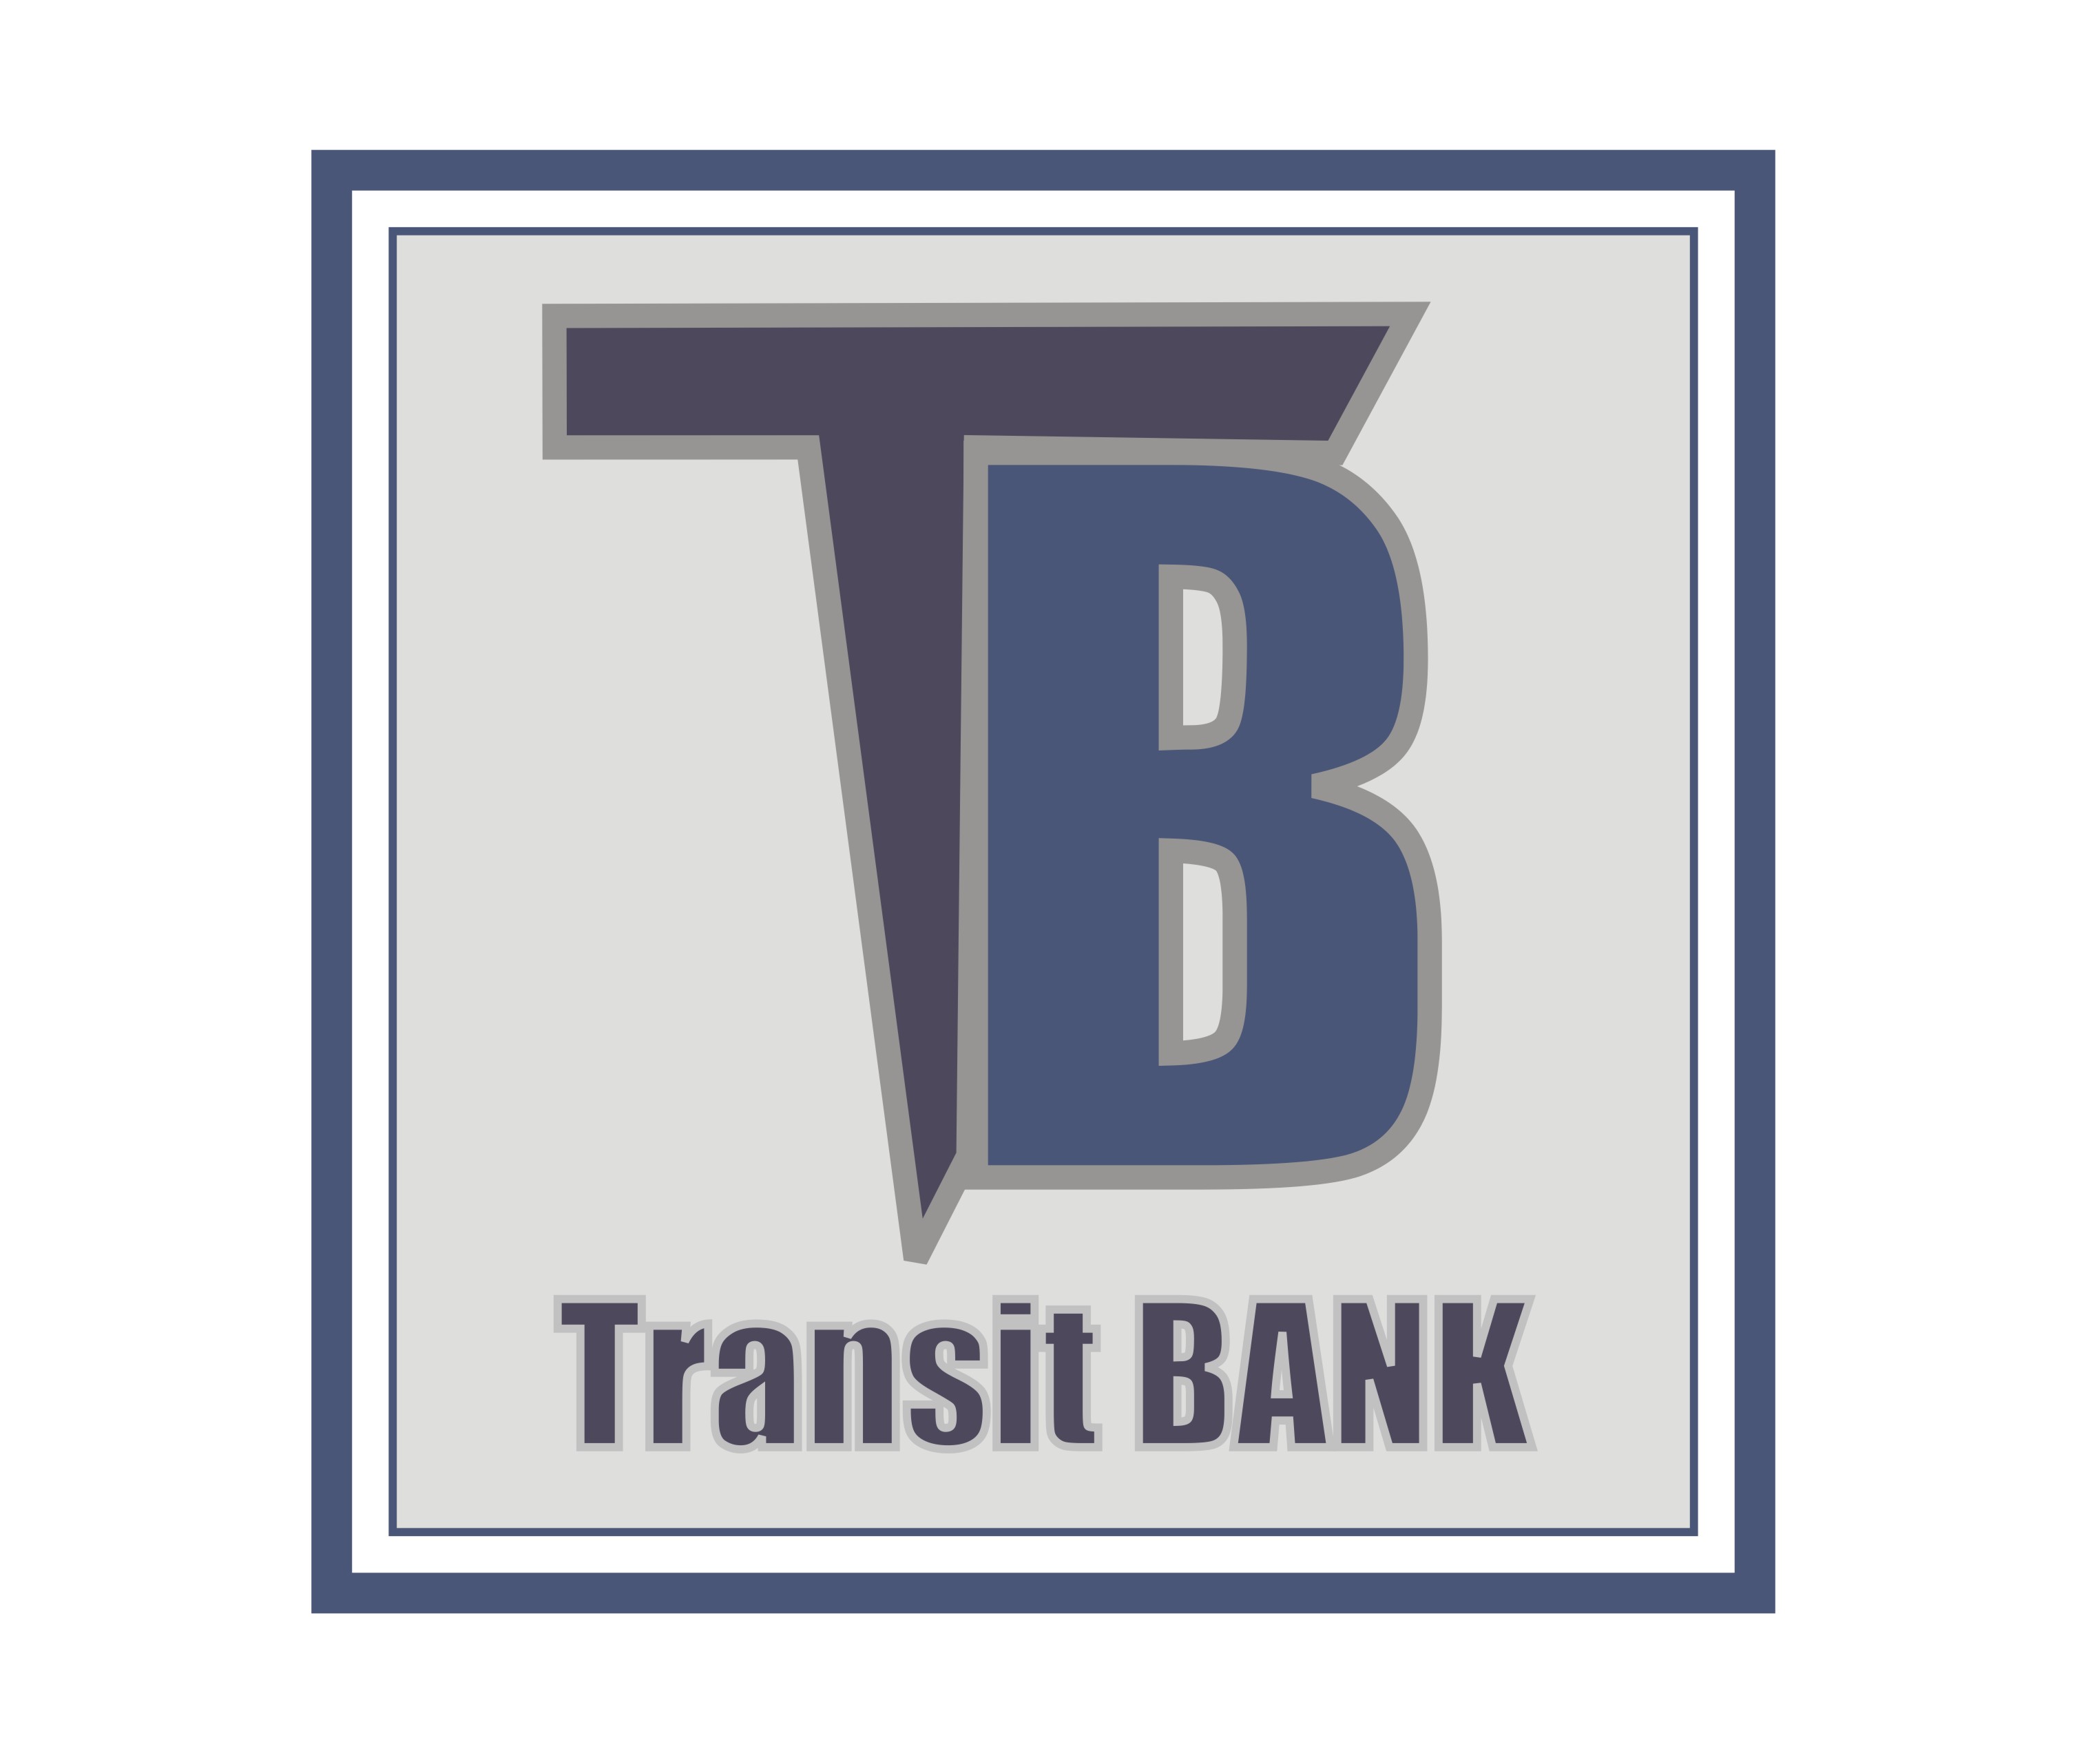 Transit Bank